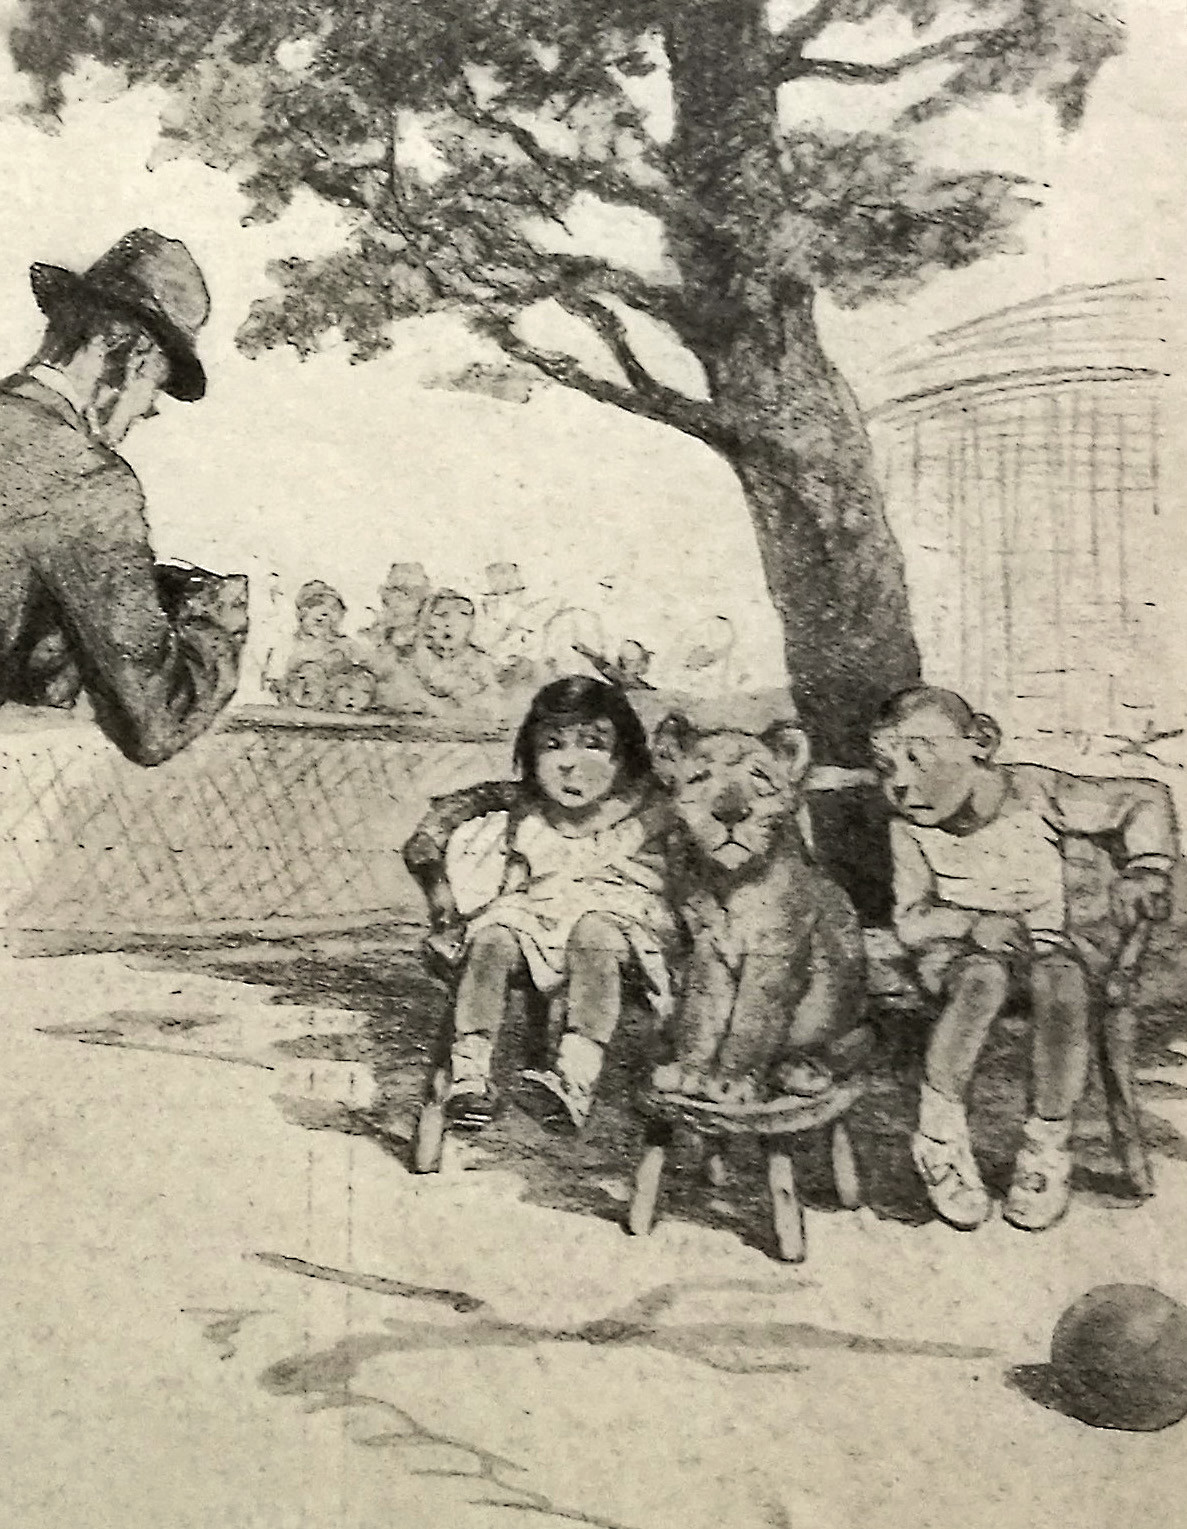 Zeichnung von Kindern, die sich mit einem Löwenbaby auf einer Bank sitzend fotografieren lassen. Vorne links steht der Fotograf, hinter einem Zaun blicken Menschen der Szene zu.